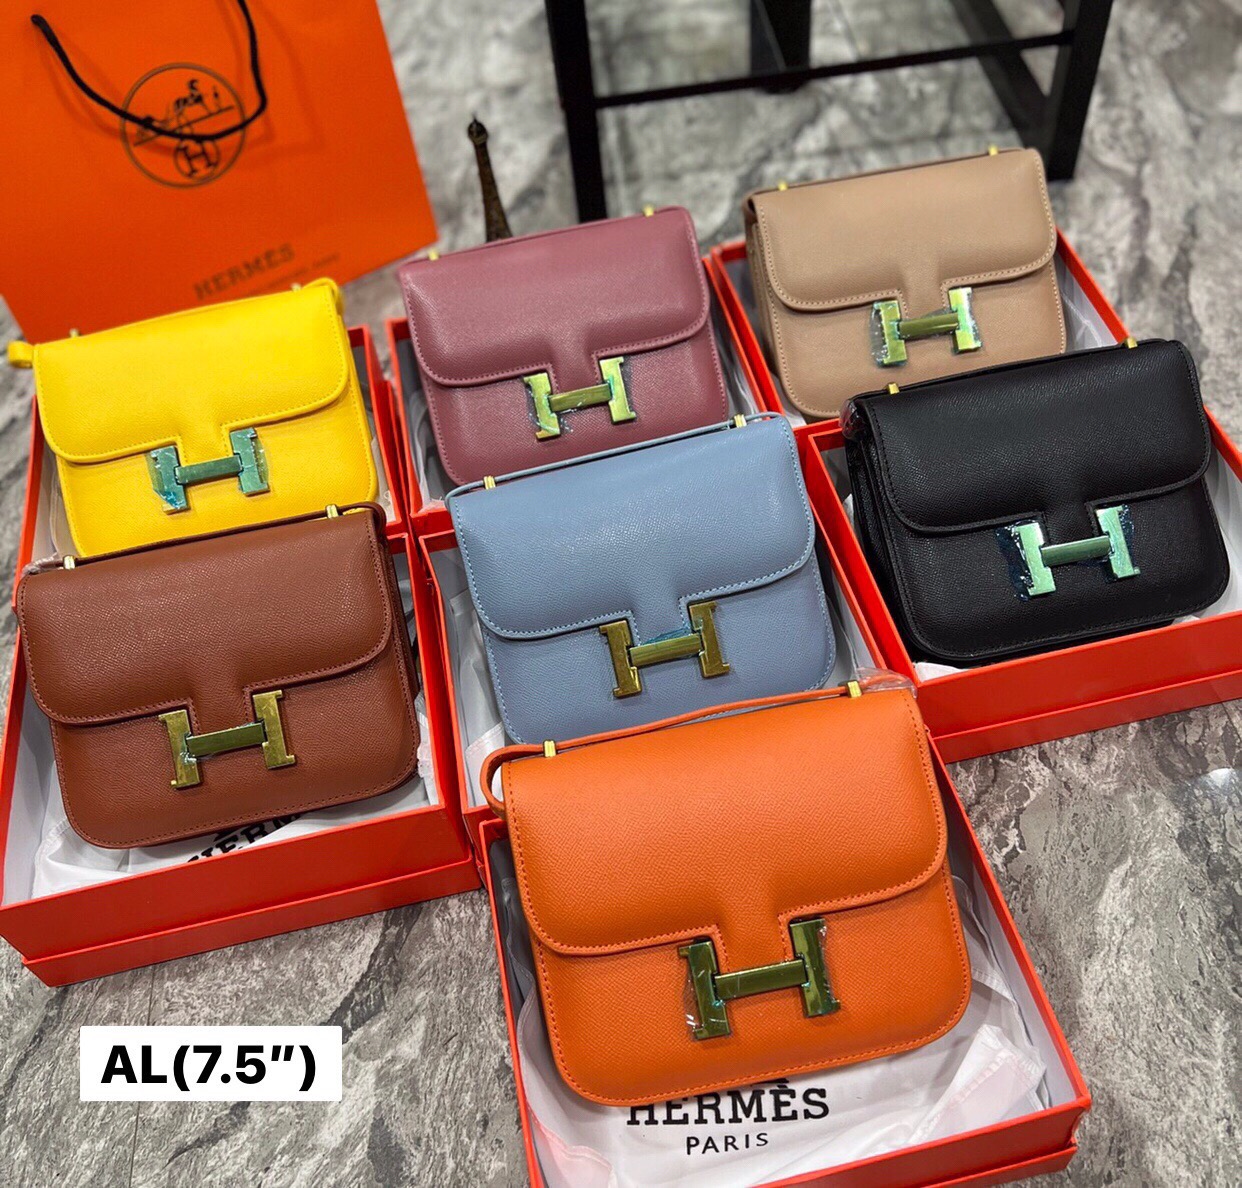 กระเป๋าhermes ราคาถูก ซื้อออนไลน์ที่ - ก.ย. 2022 | Lazada.co.th